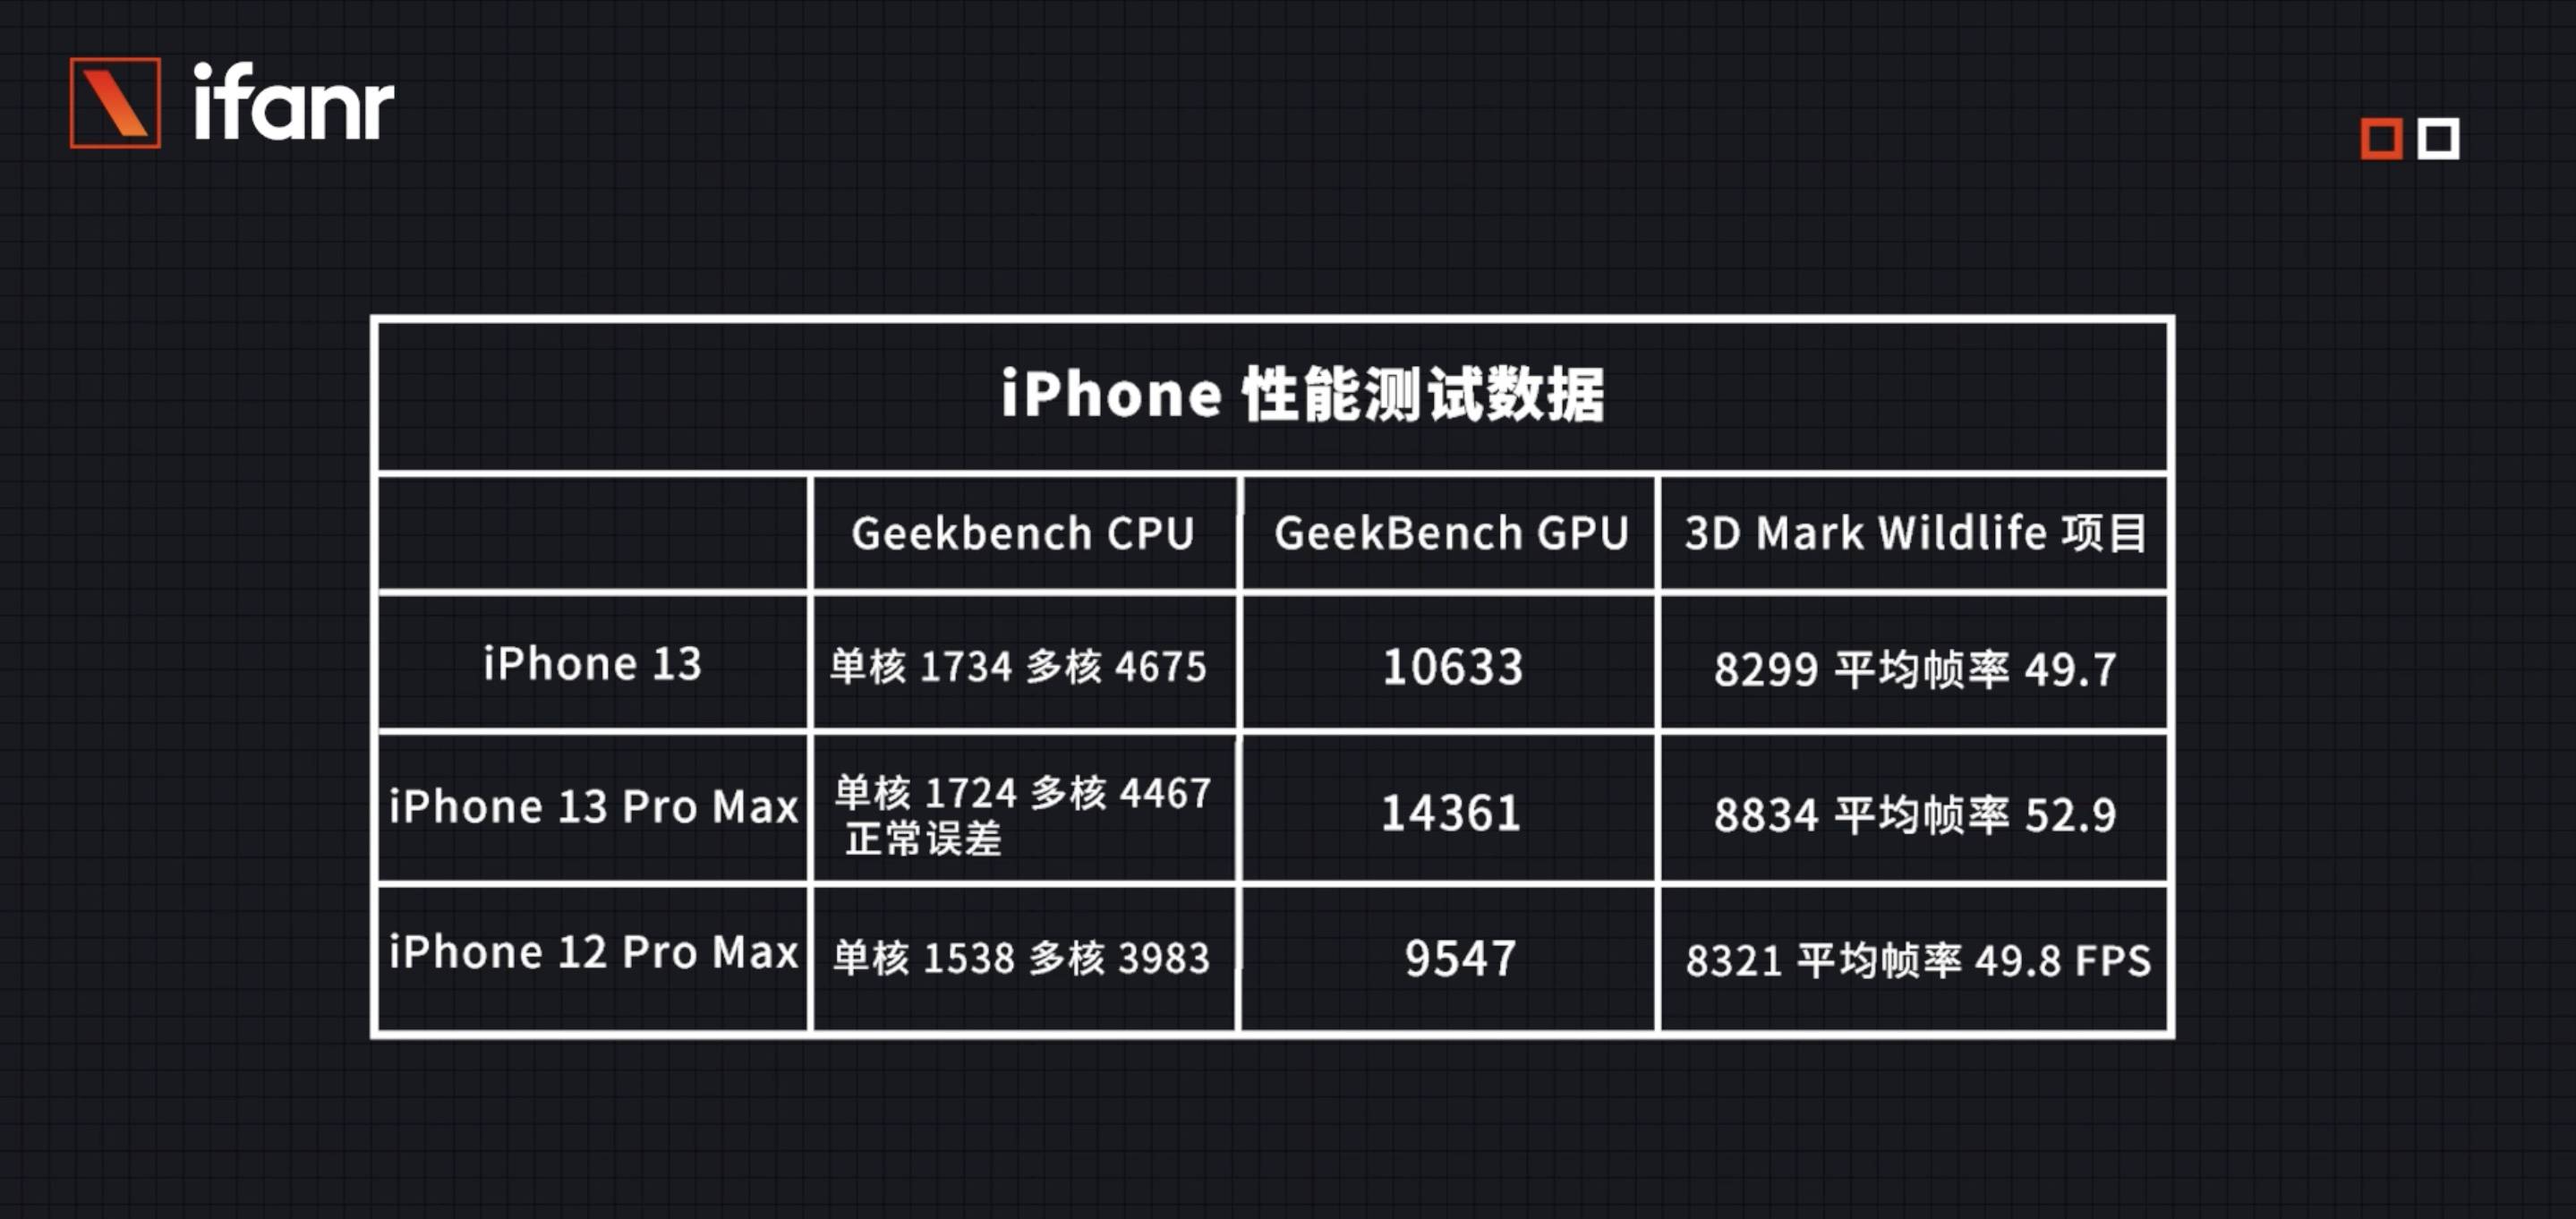 talkfresh 133 - La serie iPhone 13 non ha più lo stesso “core”, perché Apple ha realizzato tre diversi processori A15?